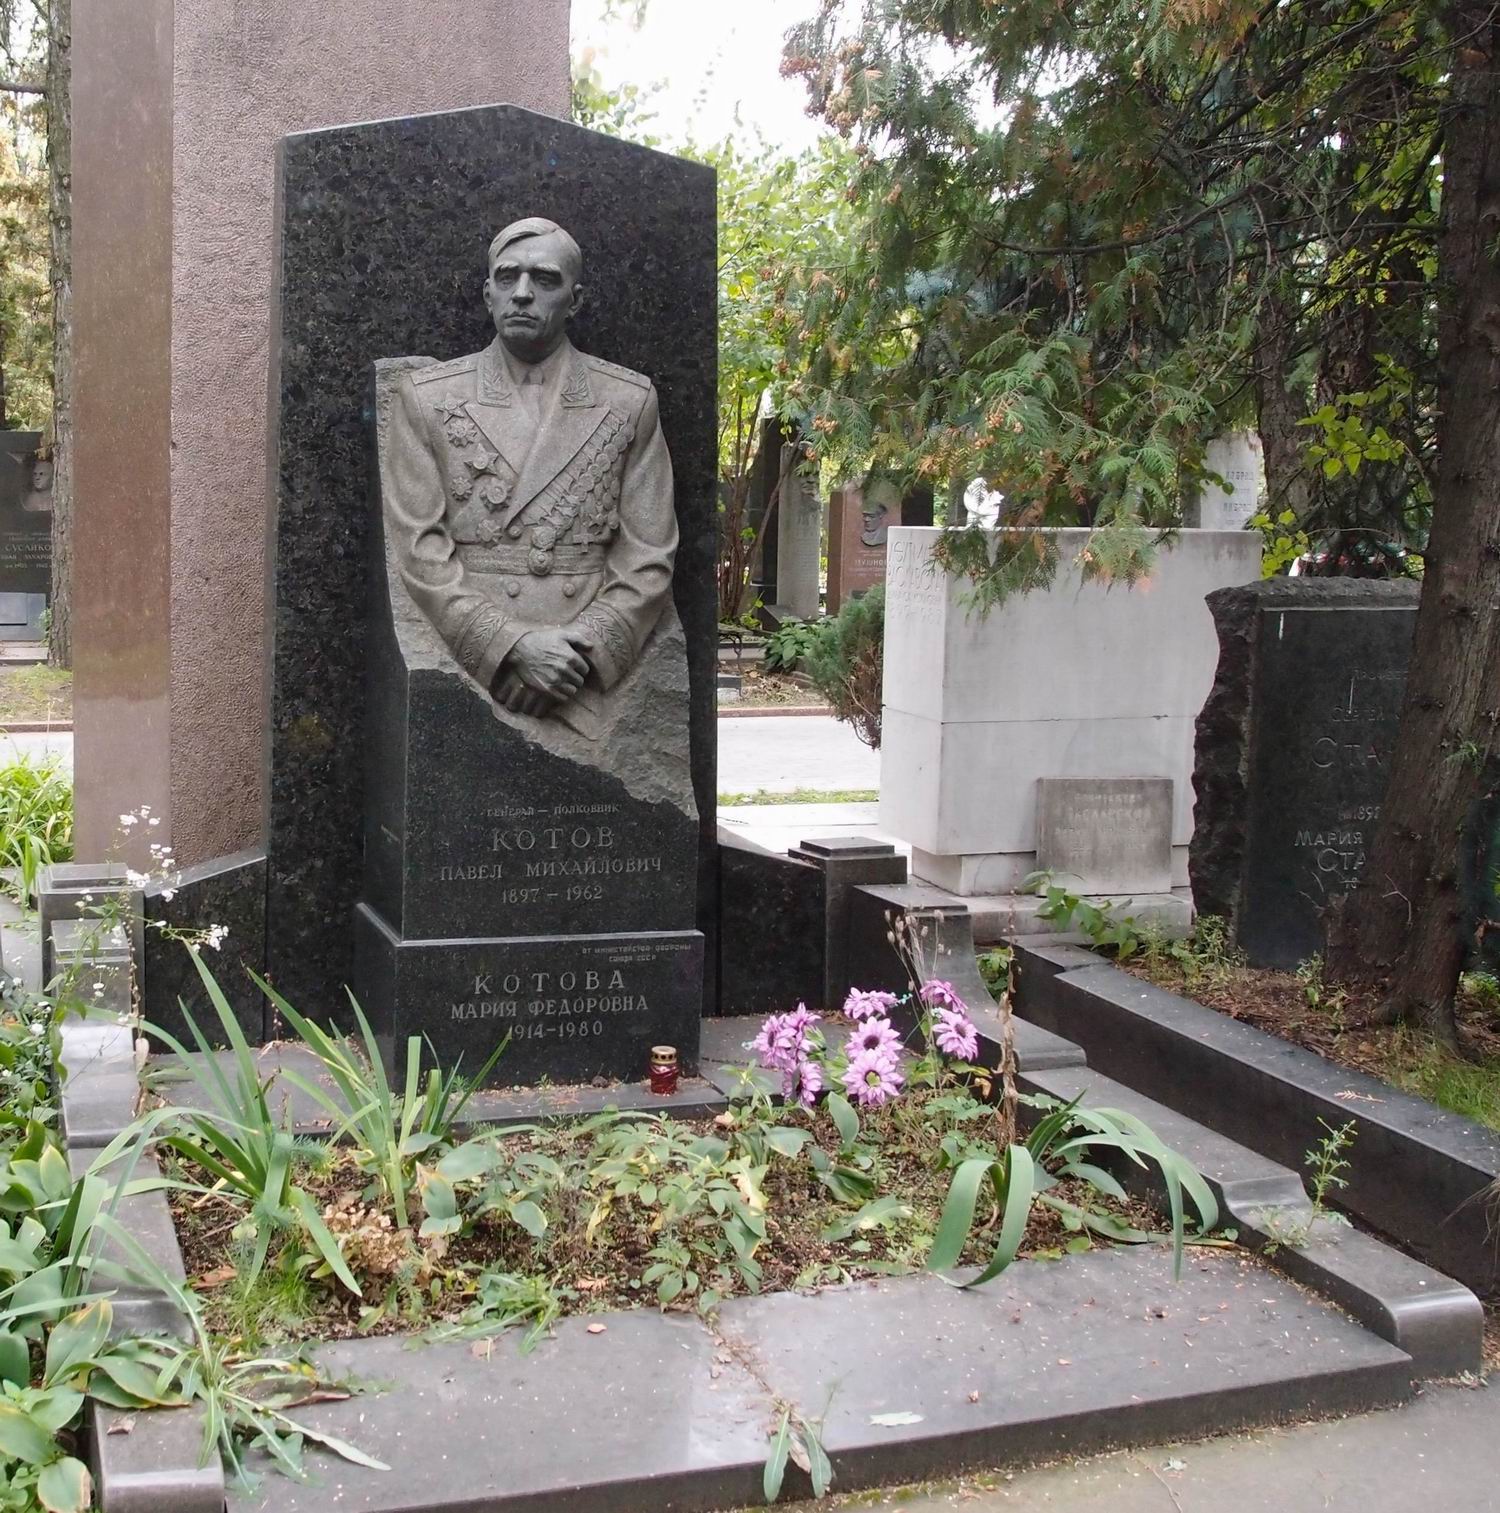 Памятник на могиле Котова-Легонькова П.М. (1897-1962), ск. Г.Постников, на Новодевичьем кладбище (8-20-1).